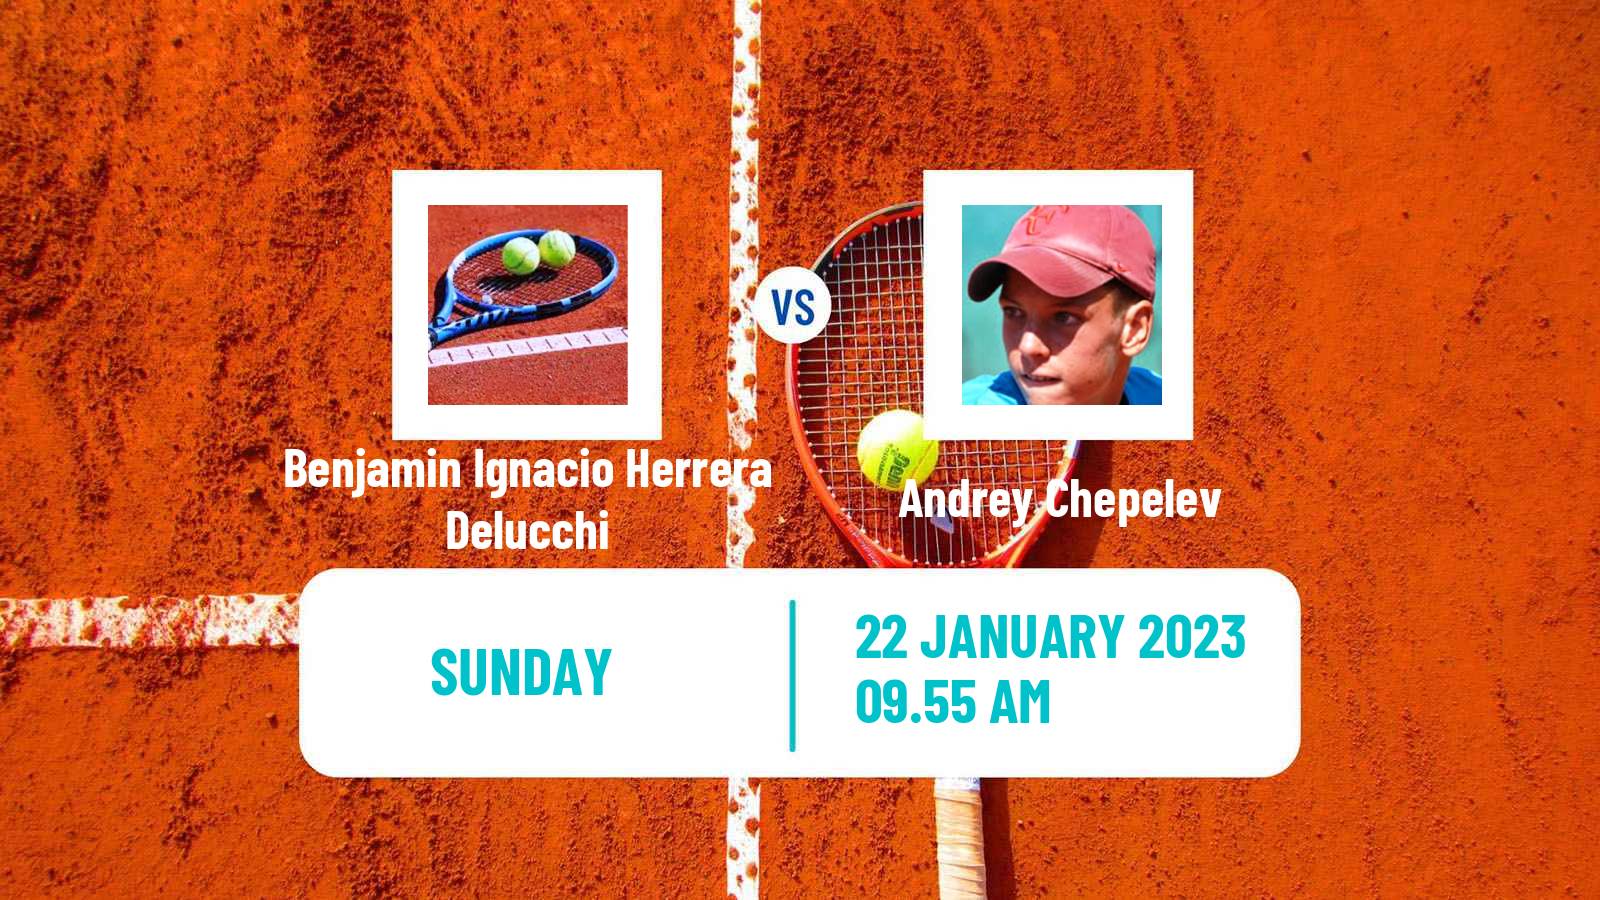 Tennis ATP Challenger Benjamin Ignacio Herrera Delucchi - Andrey Chepelev